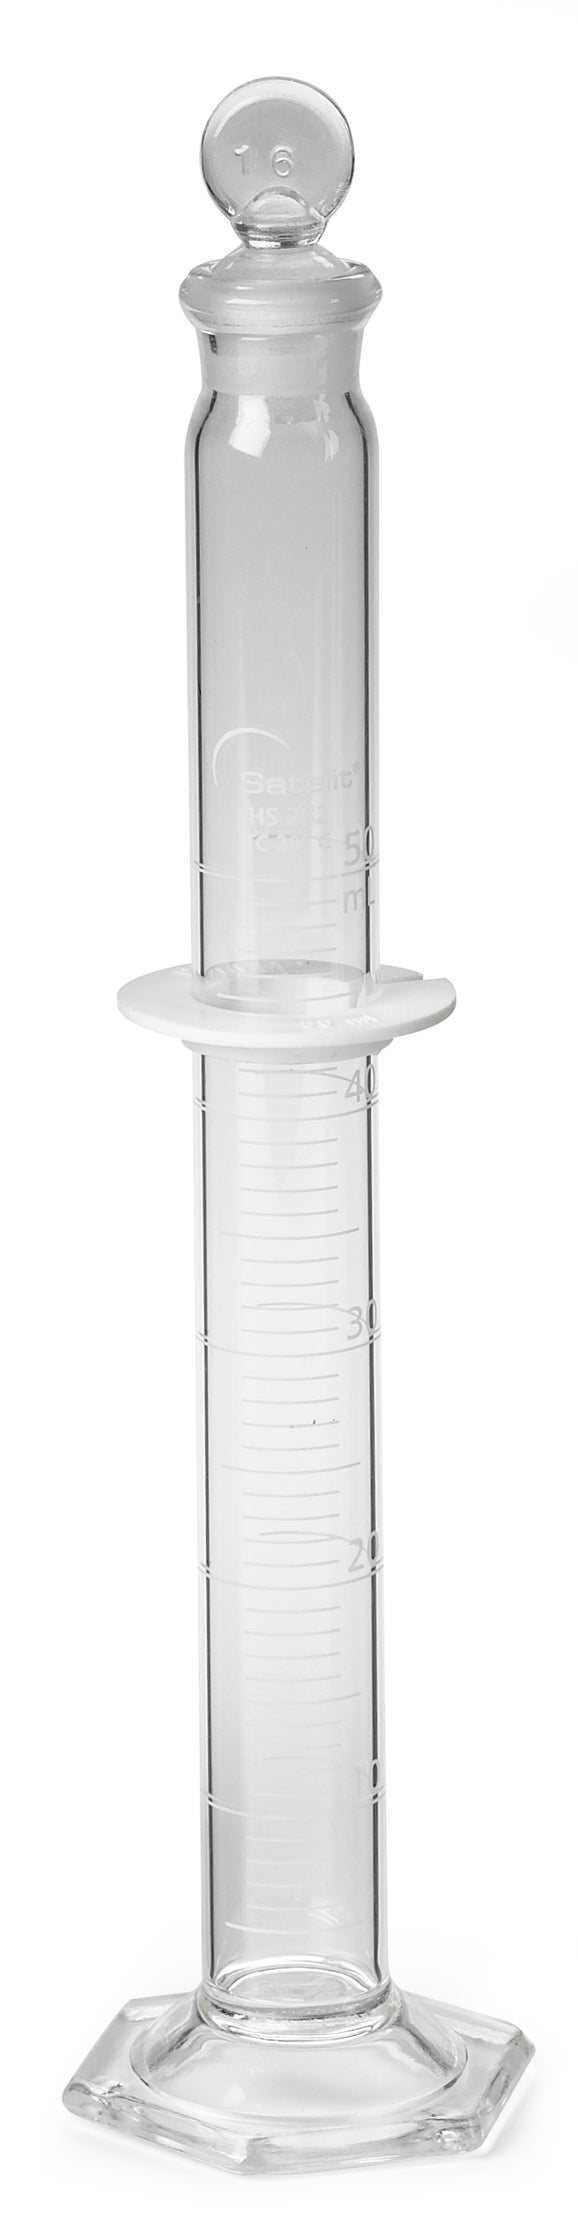 Zylinder, mit Skala, Glas, 50 mL ± 0,4 mL, Teilung 1,0 mL, Glasstopfen Nr. 16